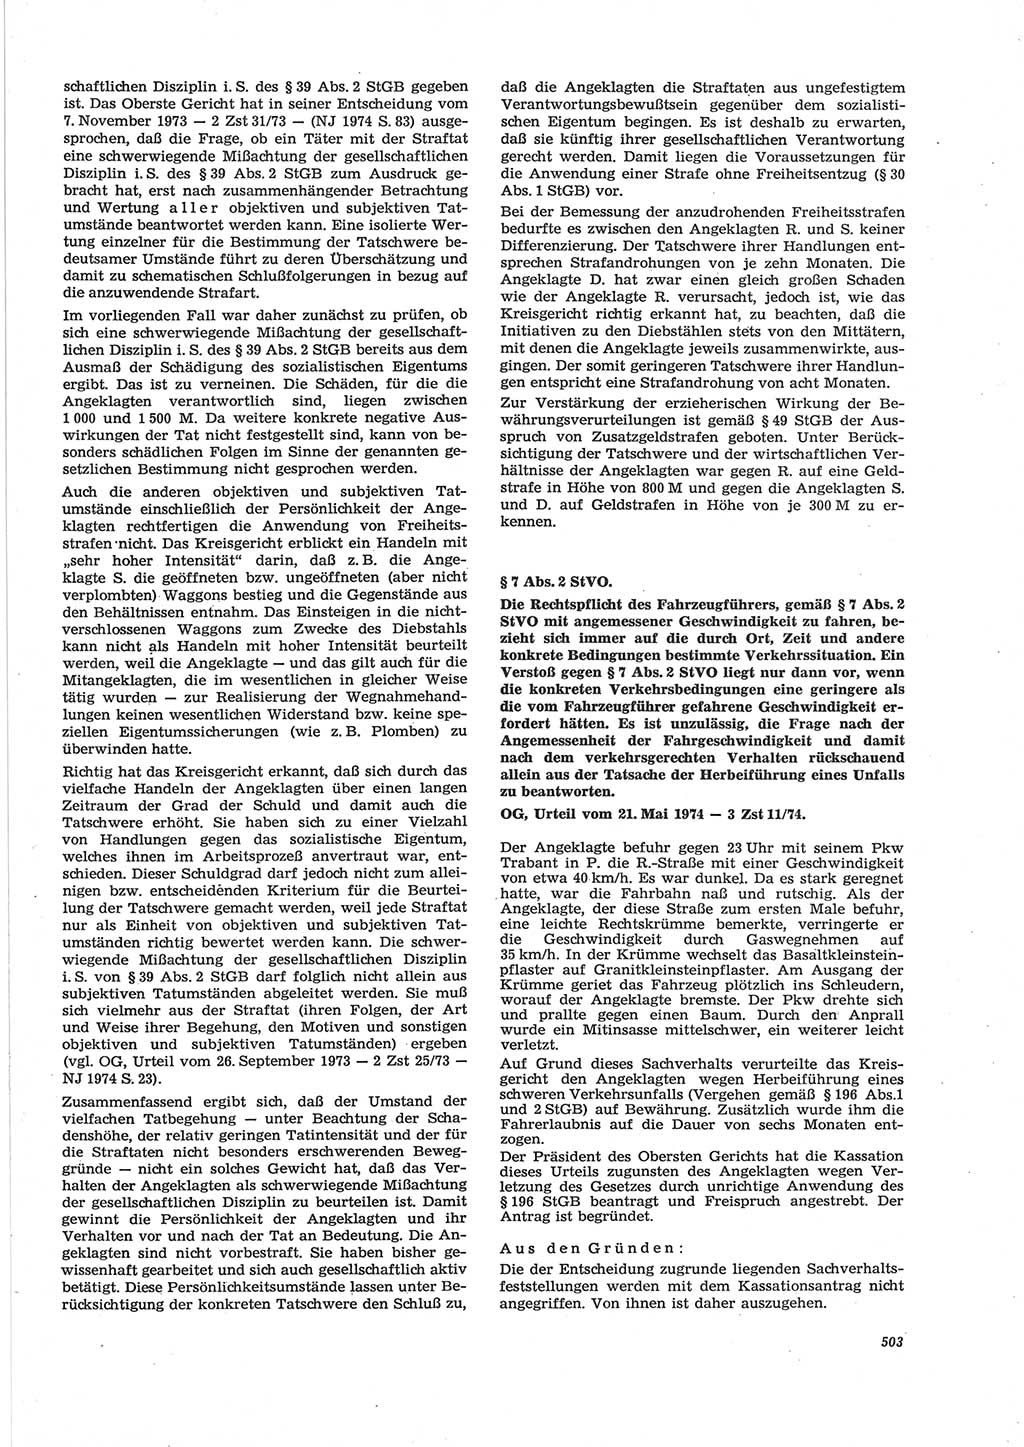 Neue Justiz (NJ), Zeitschrift für Recht und Rechtswissenschaft [Deutsche Demokratische Republik (DDR)], 28. Jahrgang 1974, Seite 503 (NJ DDR 1974, S. 503)